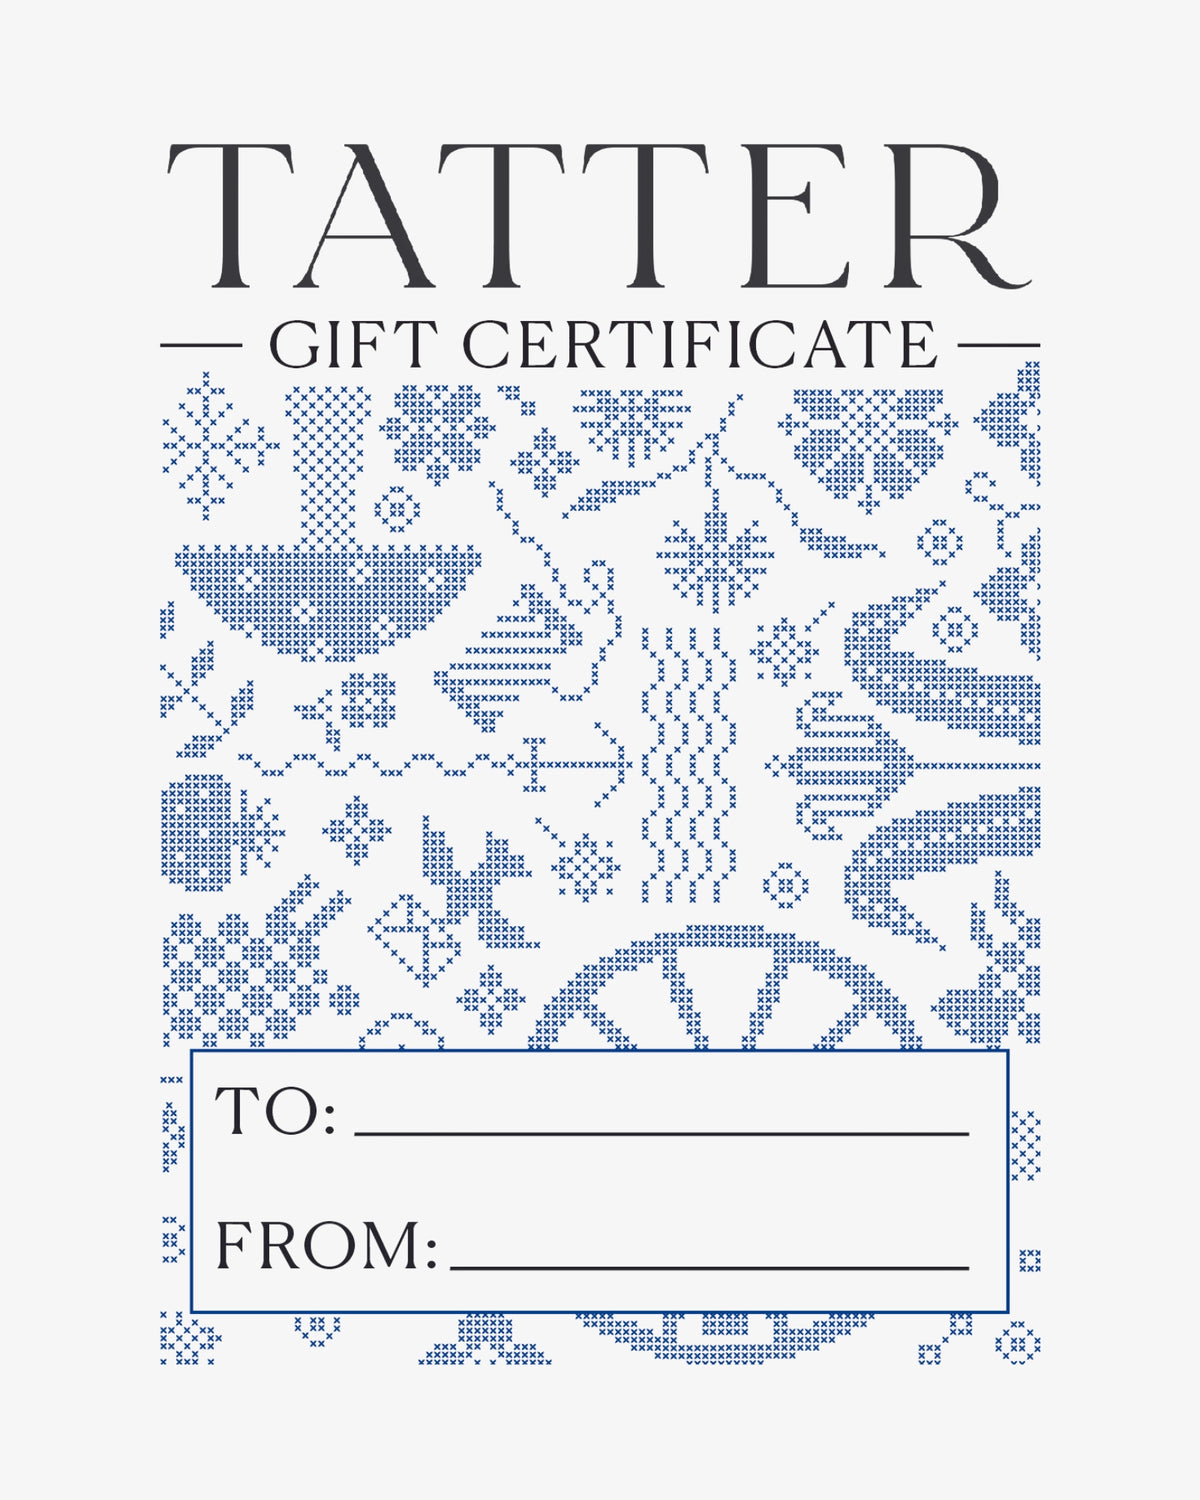 Tatter Gift Certificate